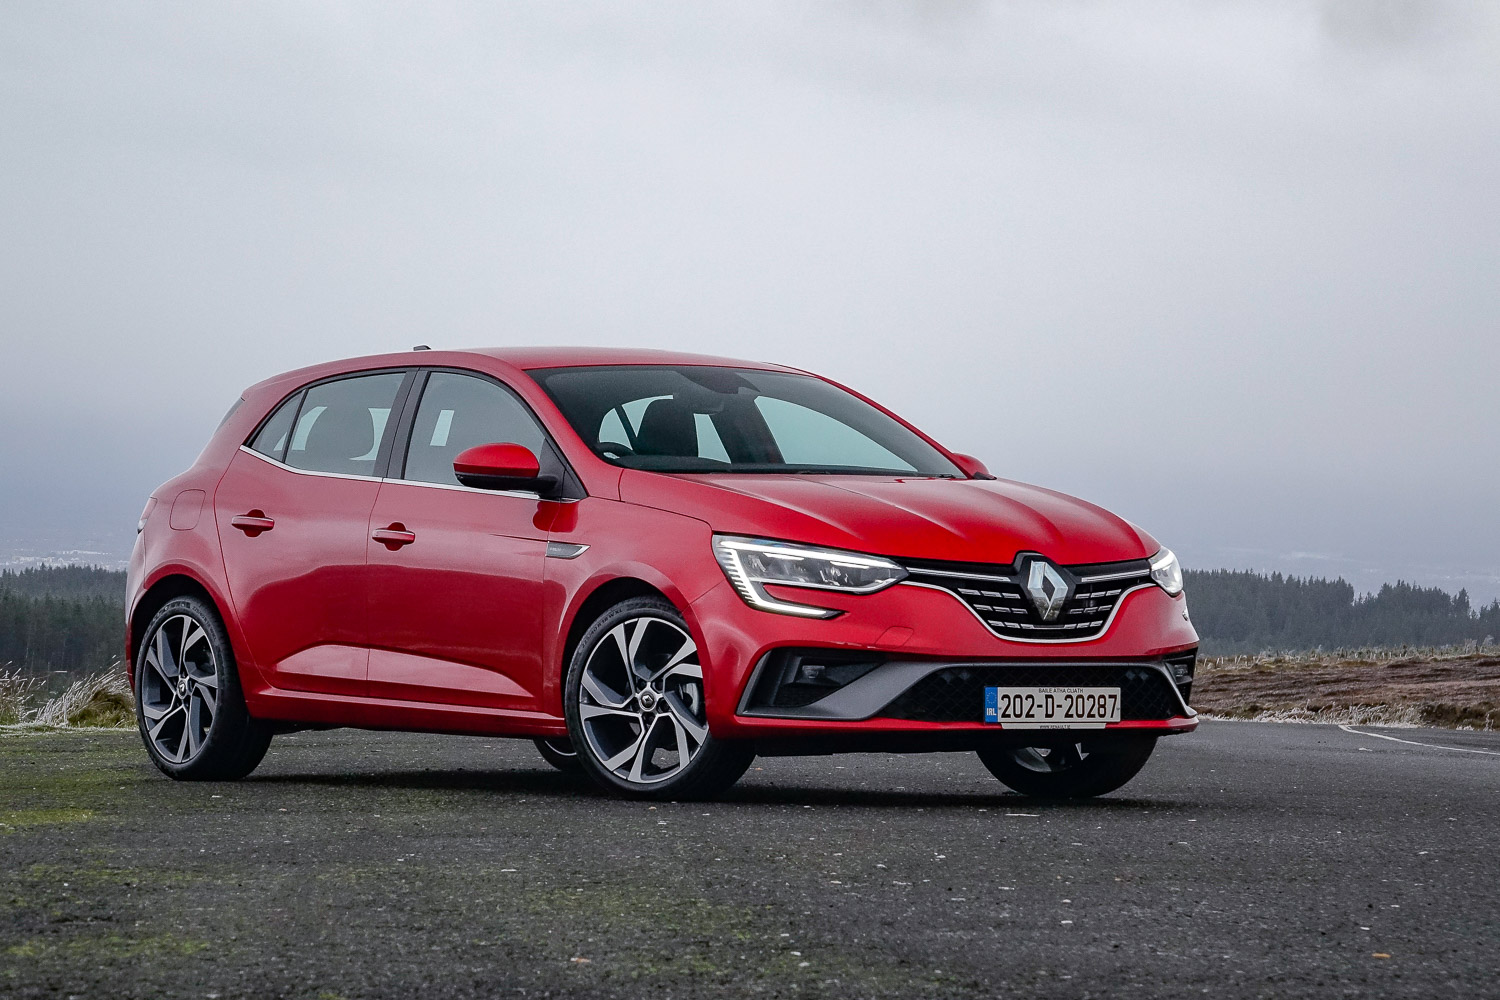 Car Reviews | Renault Megane 1.5 dCi diesel (2020) | CompleteCar.ie